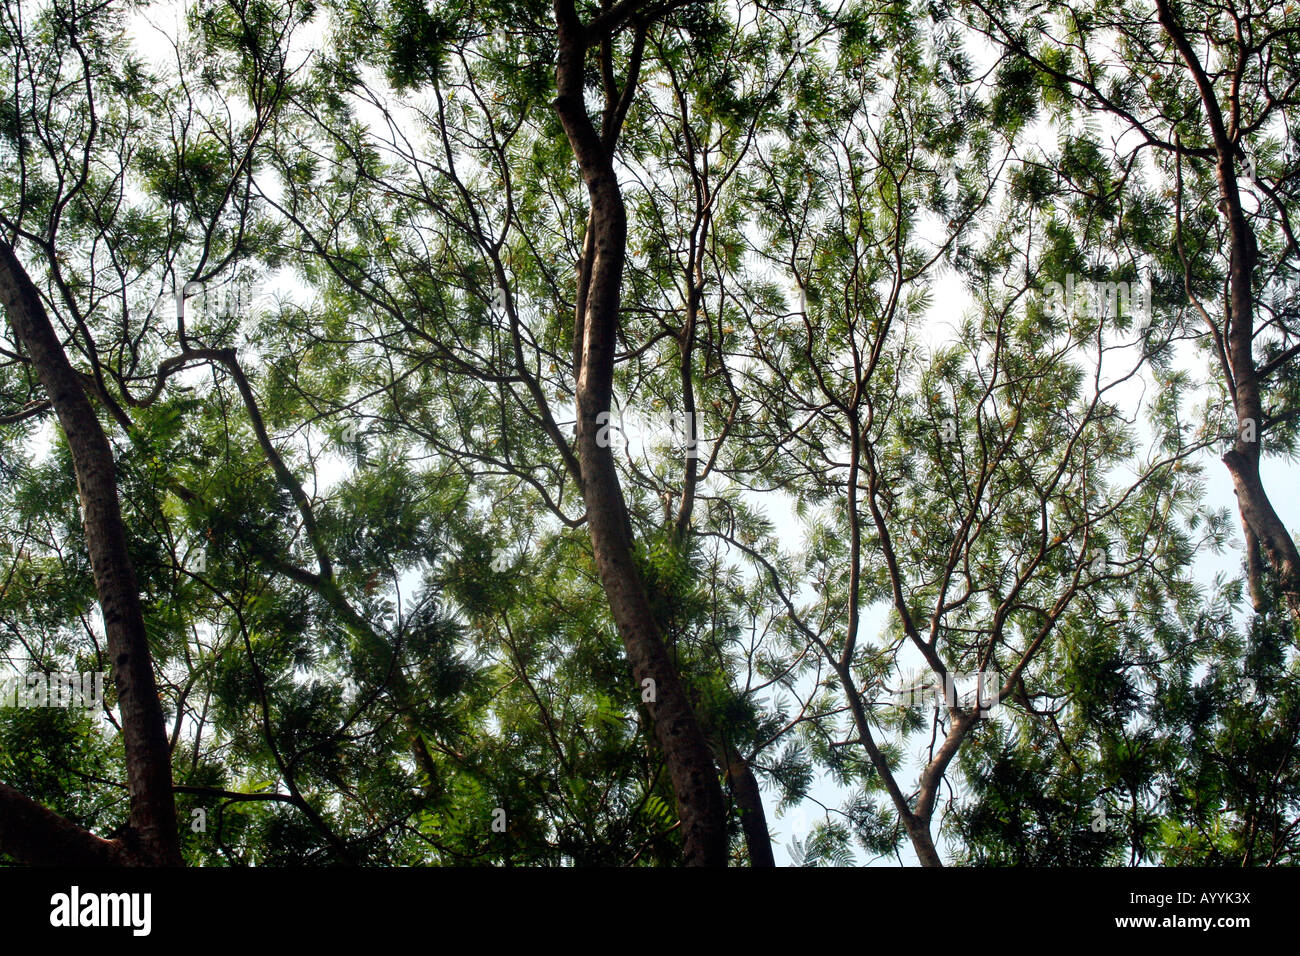 Baum Blätter, Zweige und Blätter bilden eine feine Guaze wie Netzwerk in den Baumkronen Stockfoto